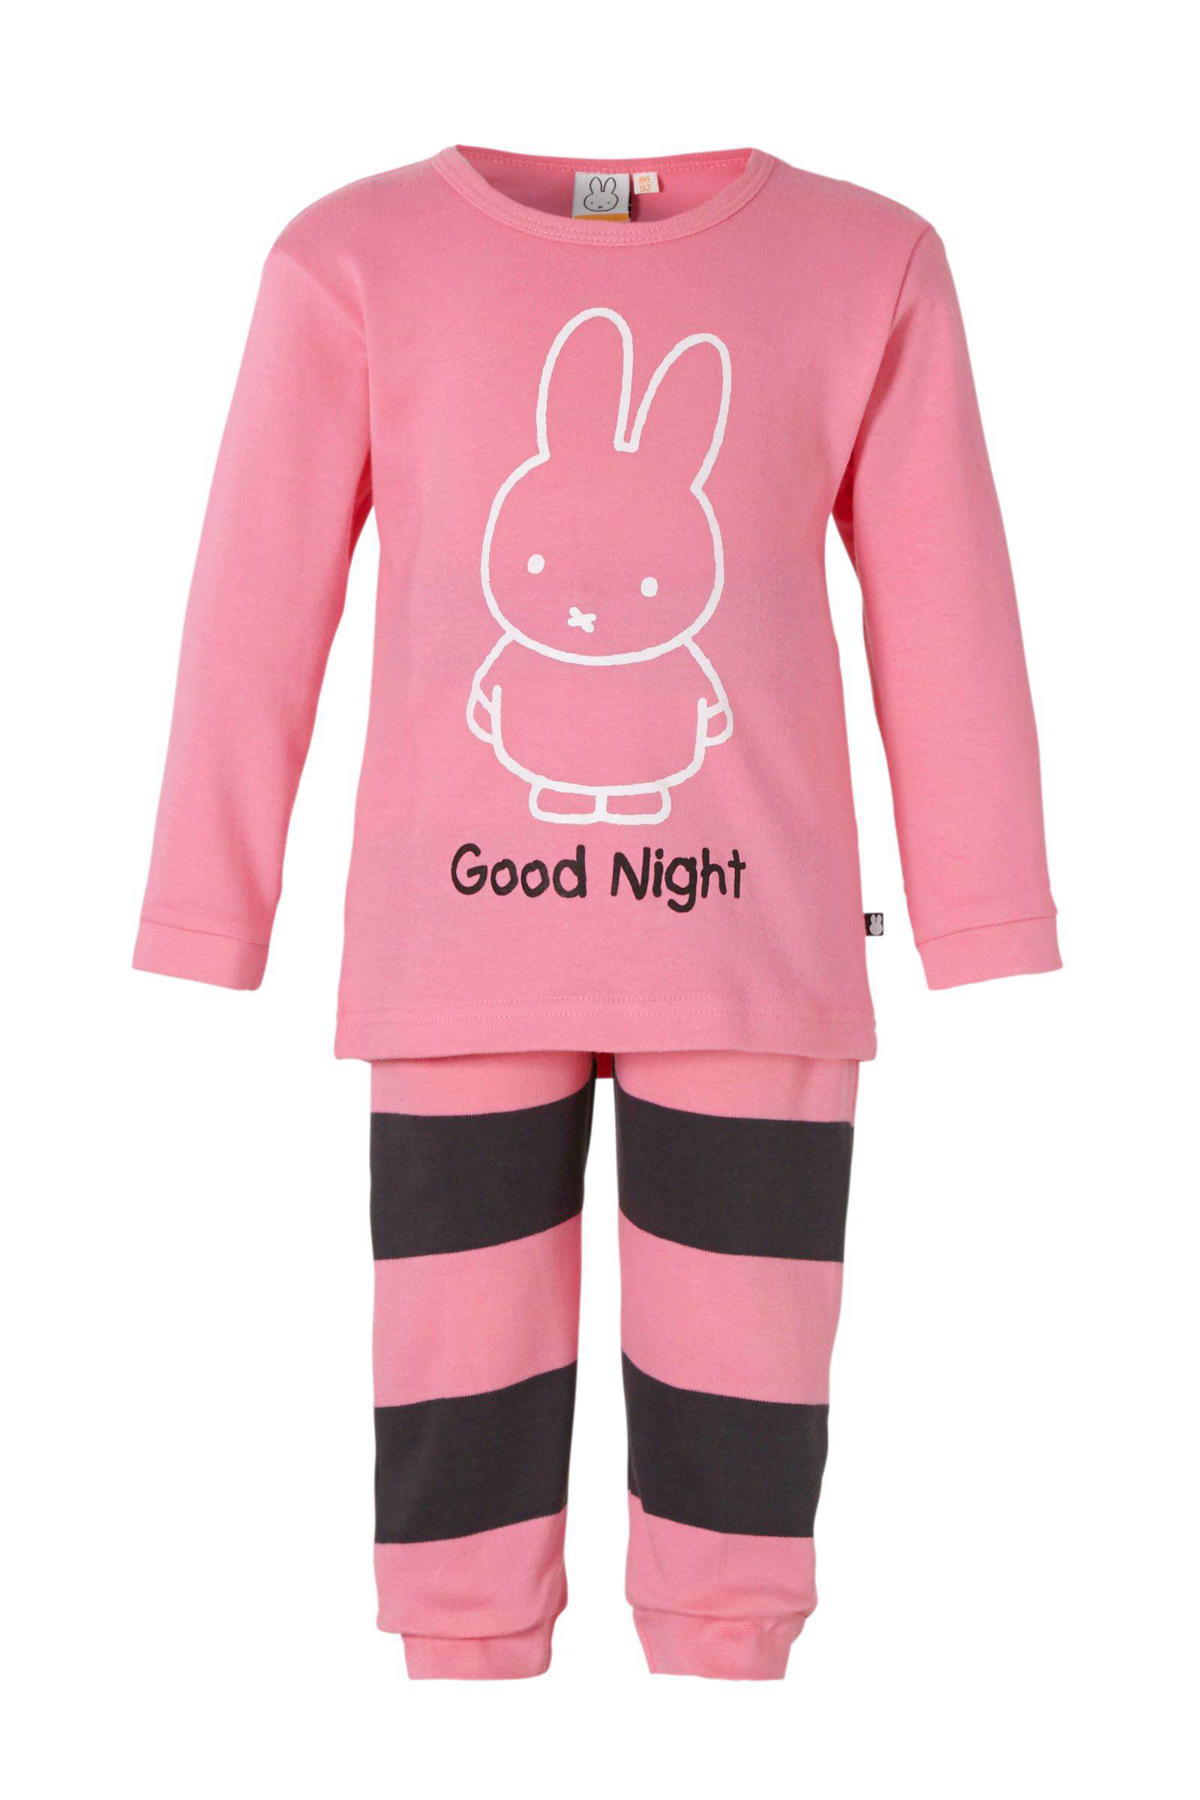 vacht Toestemming helling nijntje baby pyjama kopen? | Morgen in huis | wehkamp